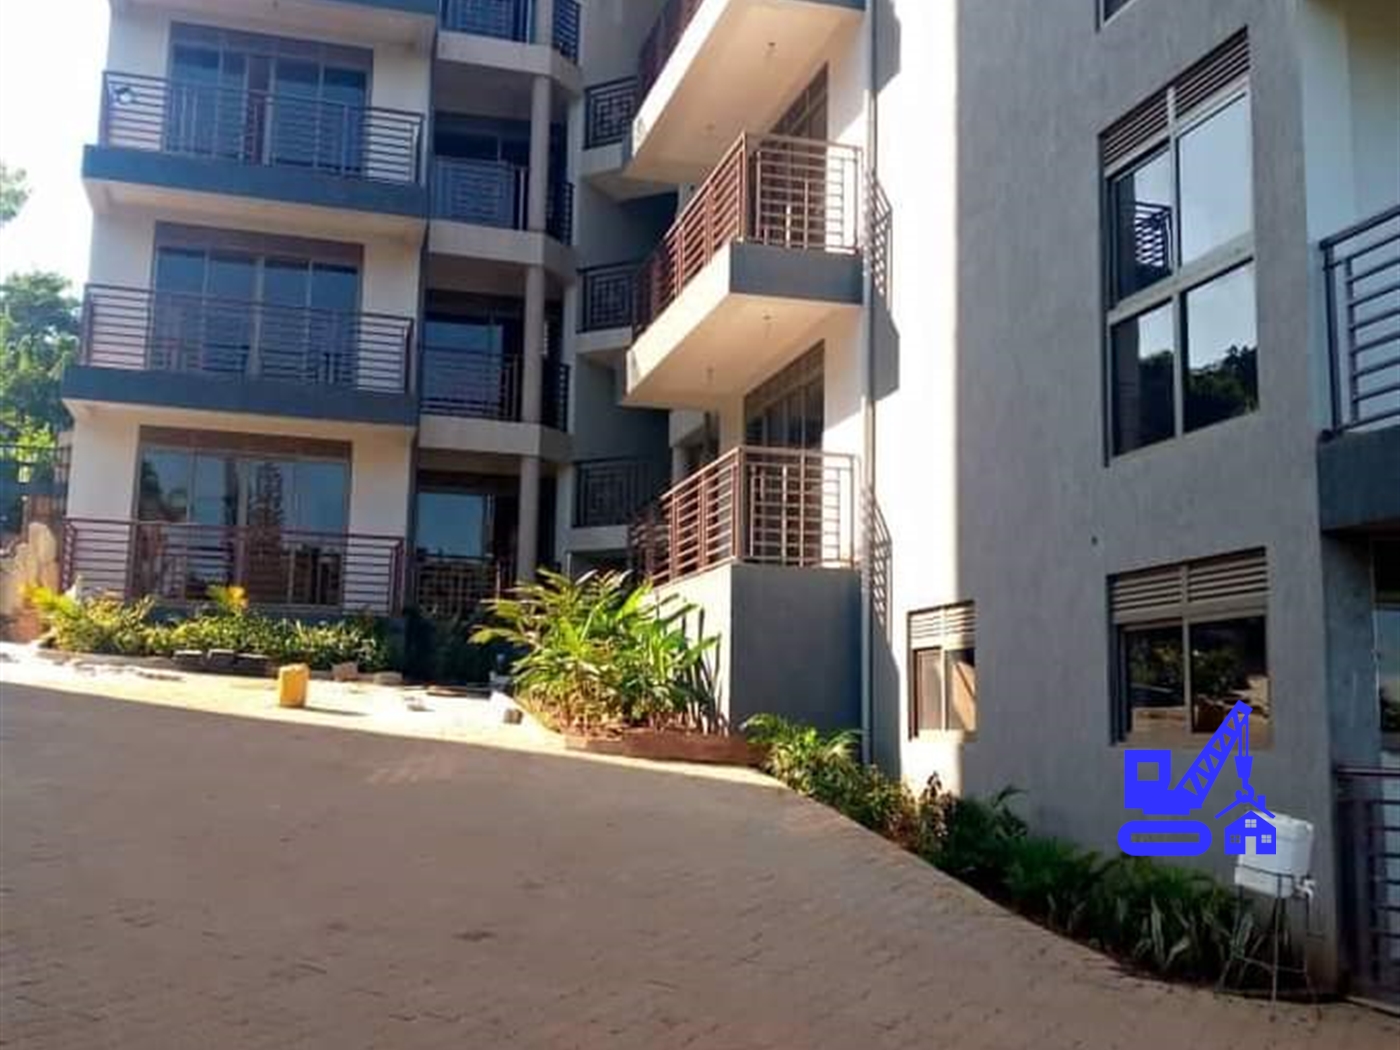 2 Bedroom Apartment For Rent In Naguru Kampala Uganda Code 04 10 22